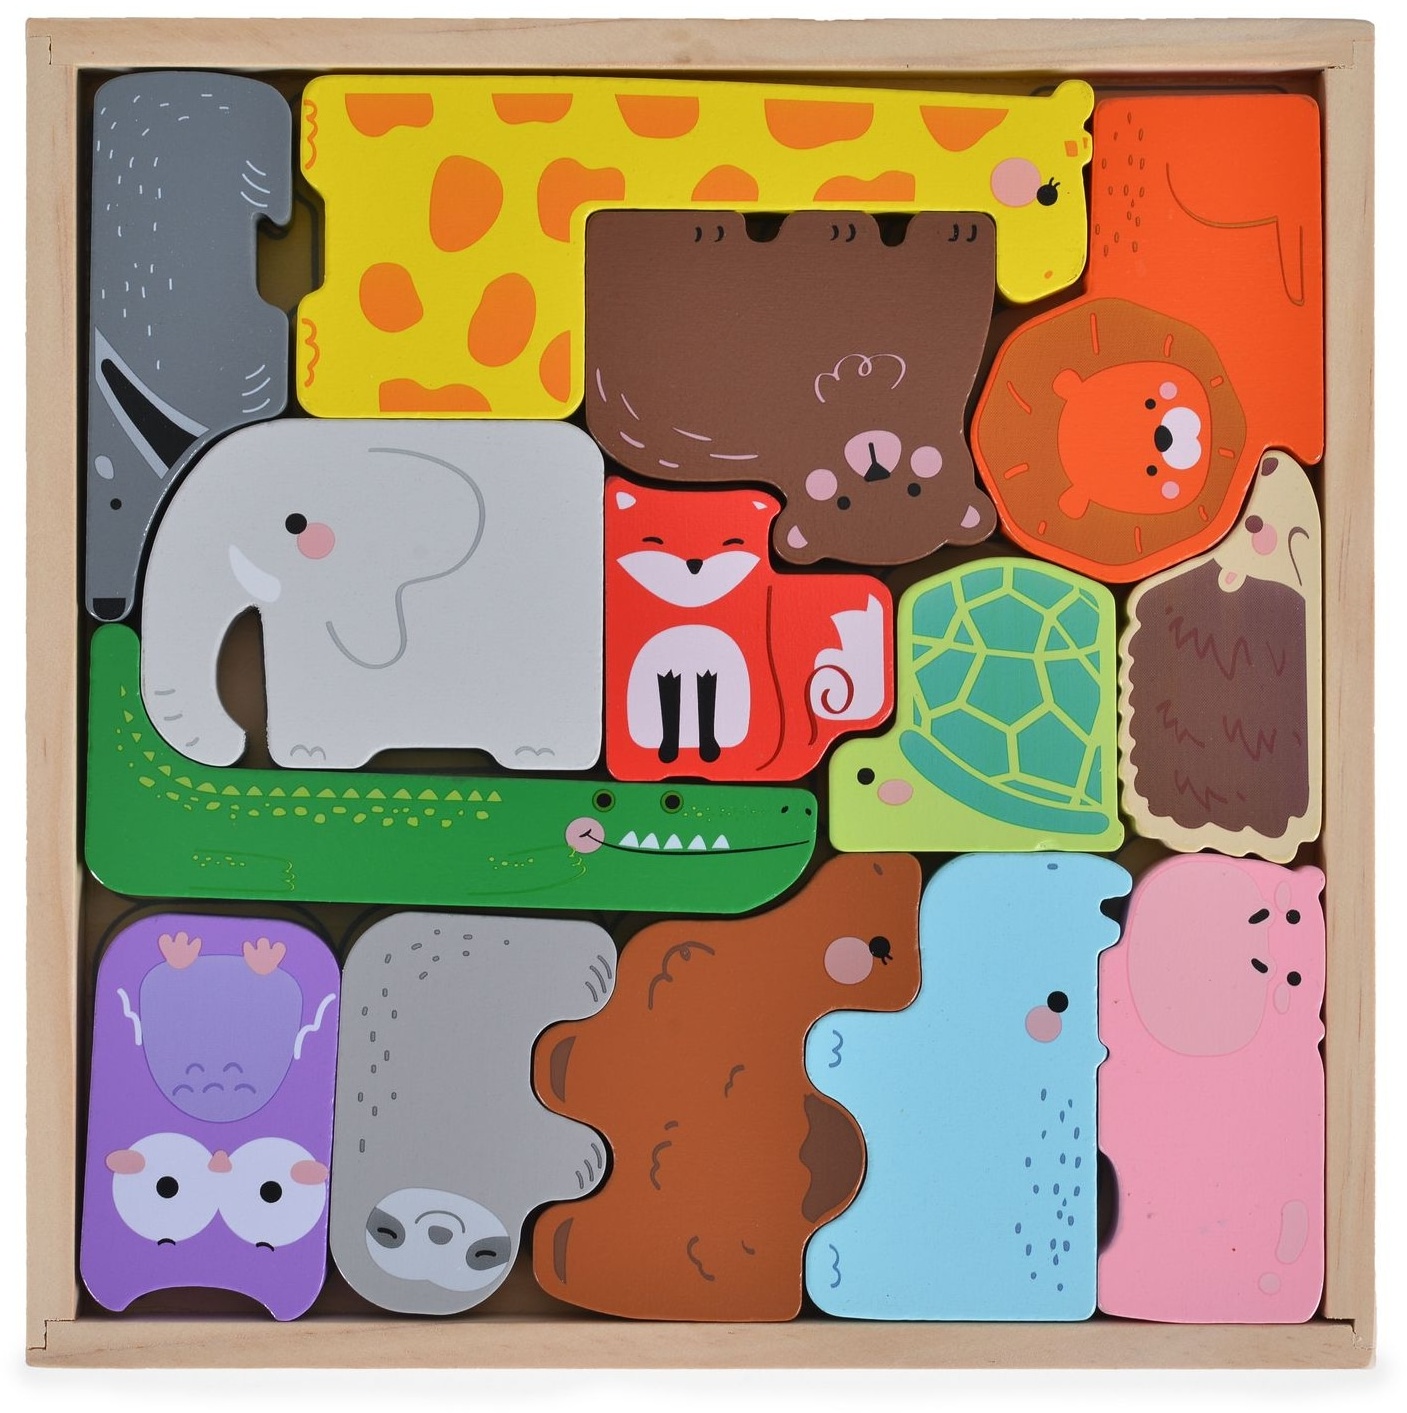 Moni Kinder Puzzle Tiere 3002 Holz, Sortierspiel, Farbpuzzle, 14 bunte Tiere bunt